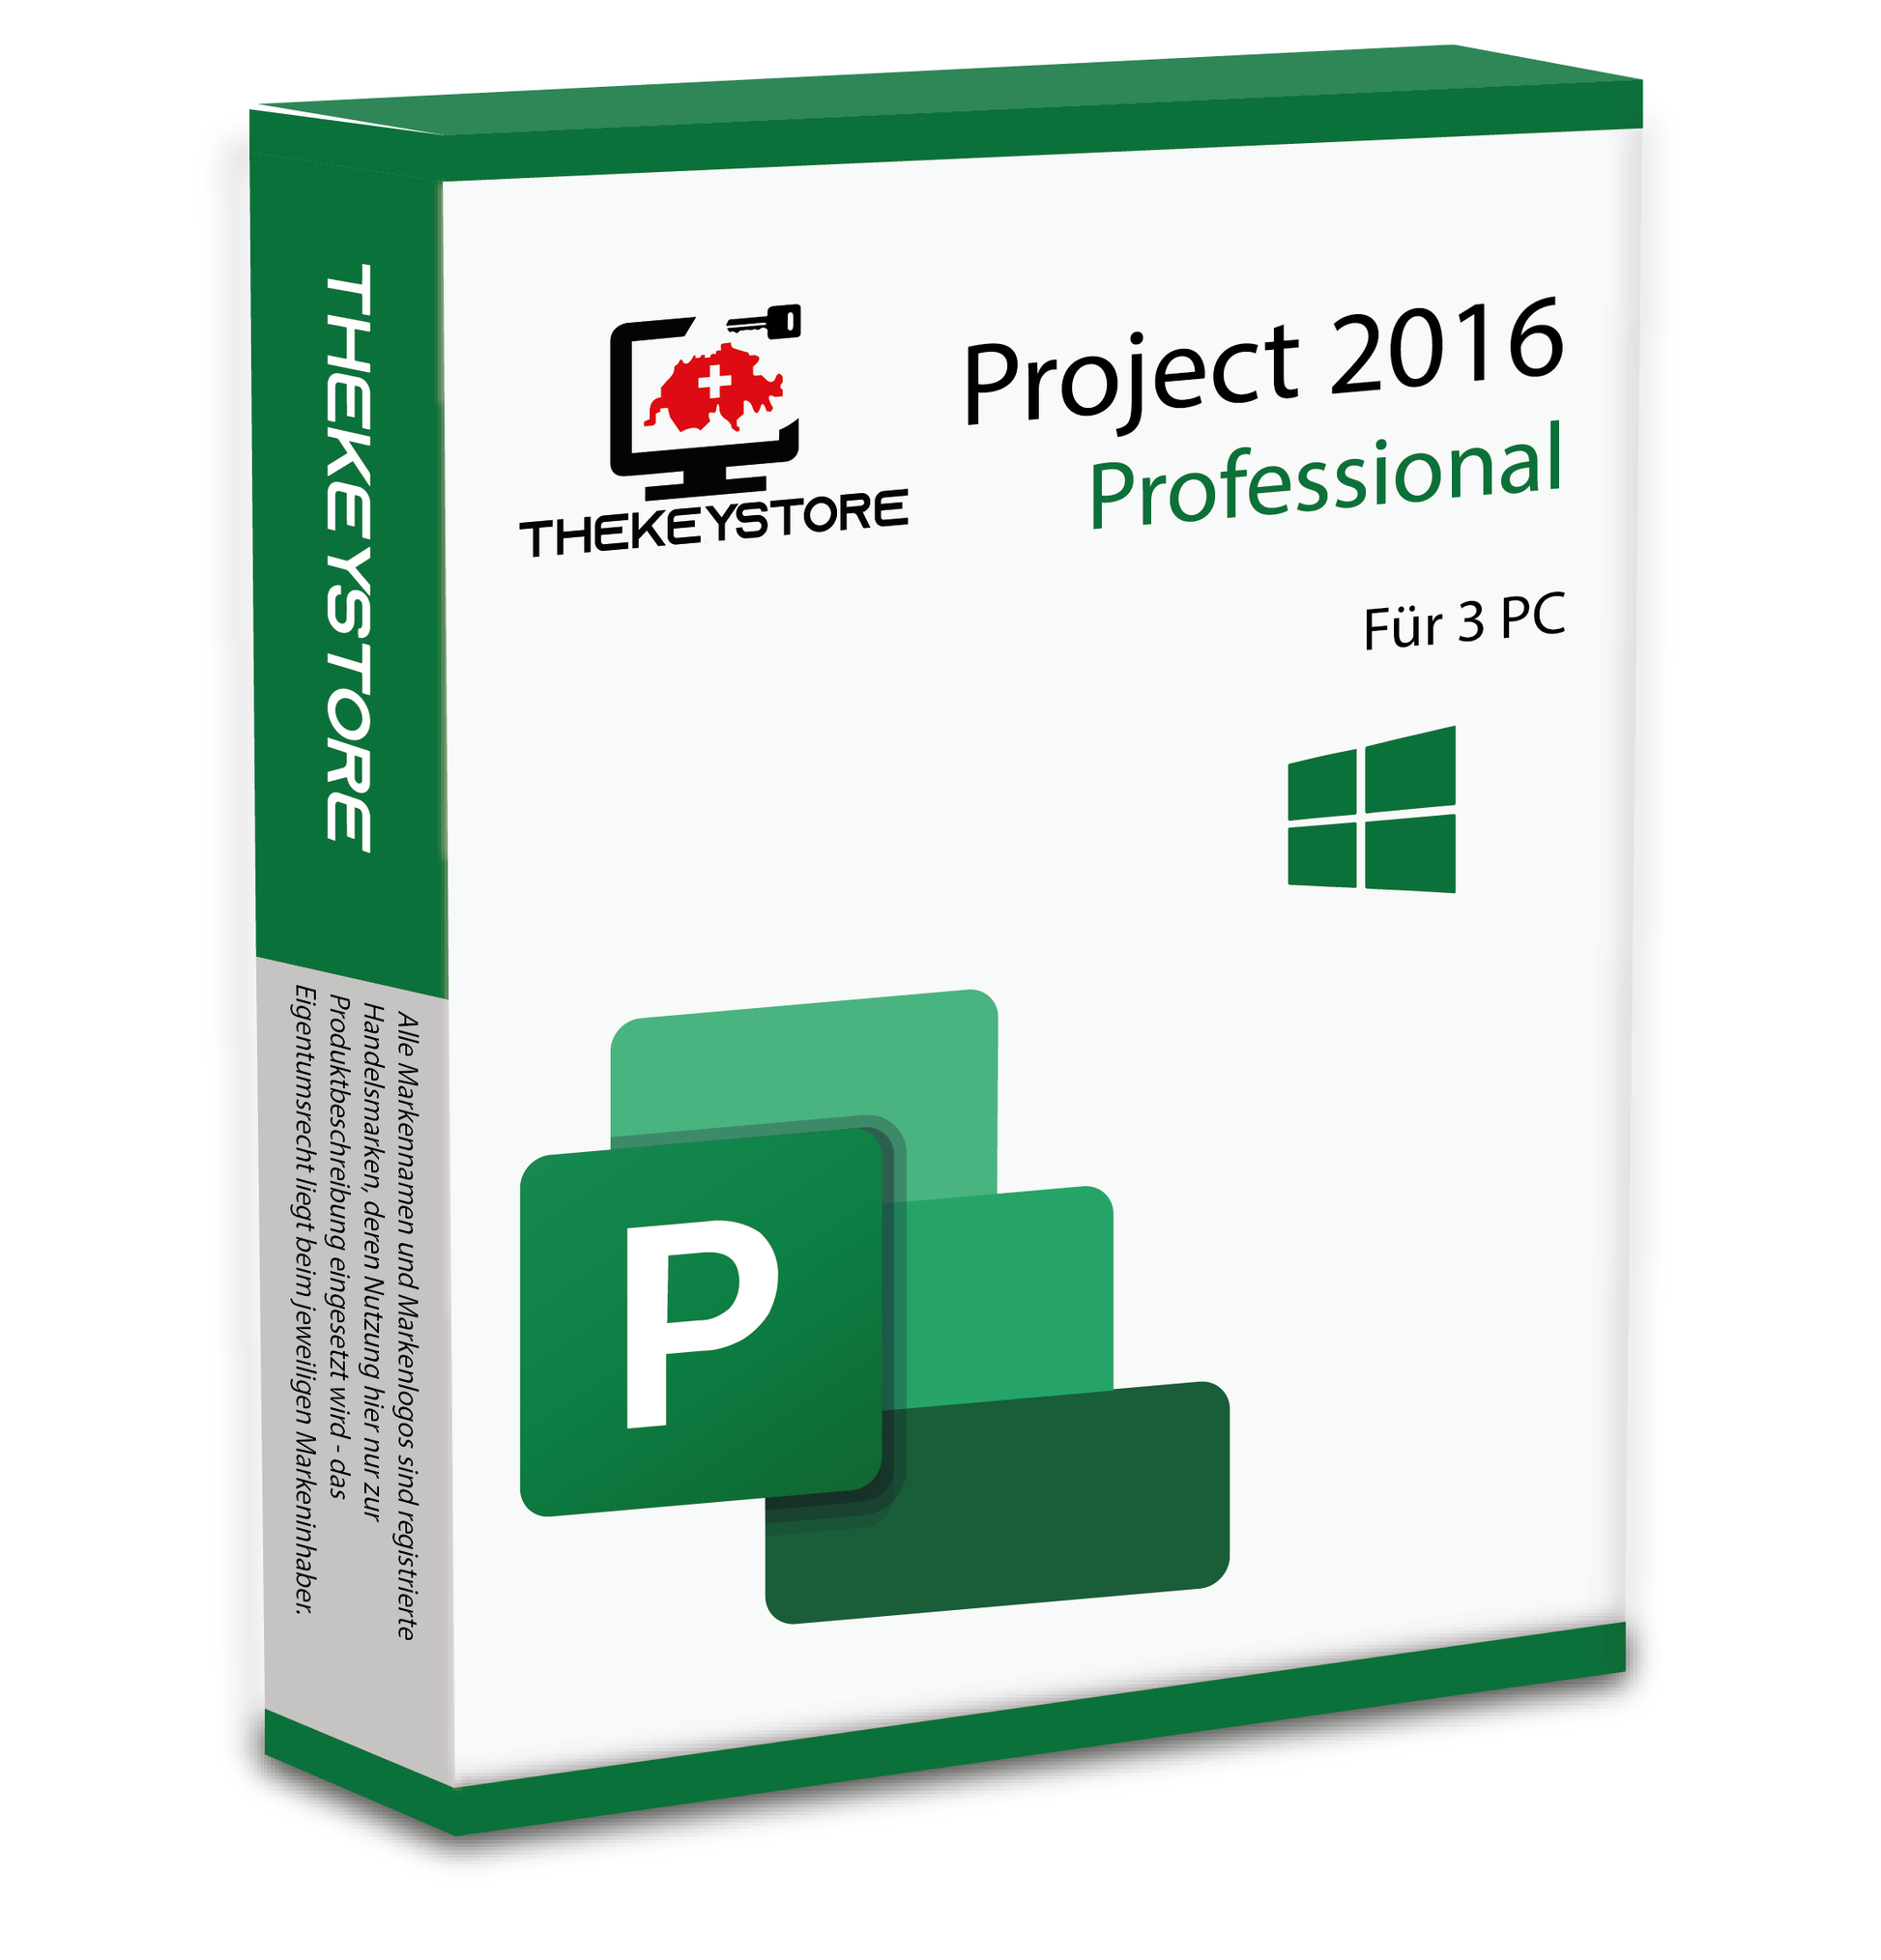 Microsoft Project 2016 Professional - Für 3 PC - TheKeyStore Schweiz